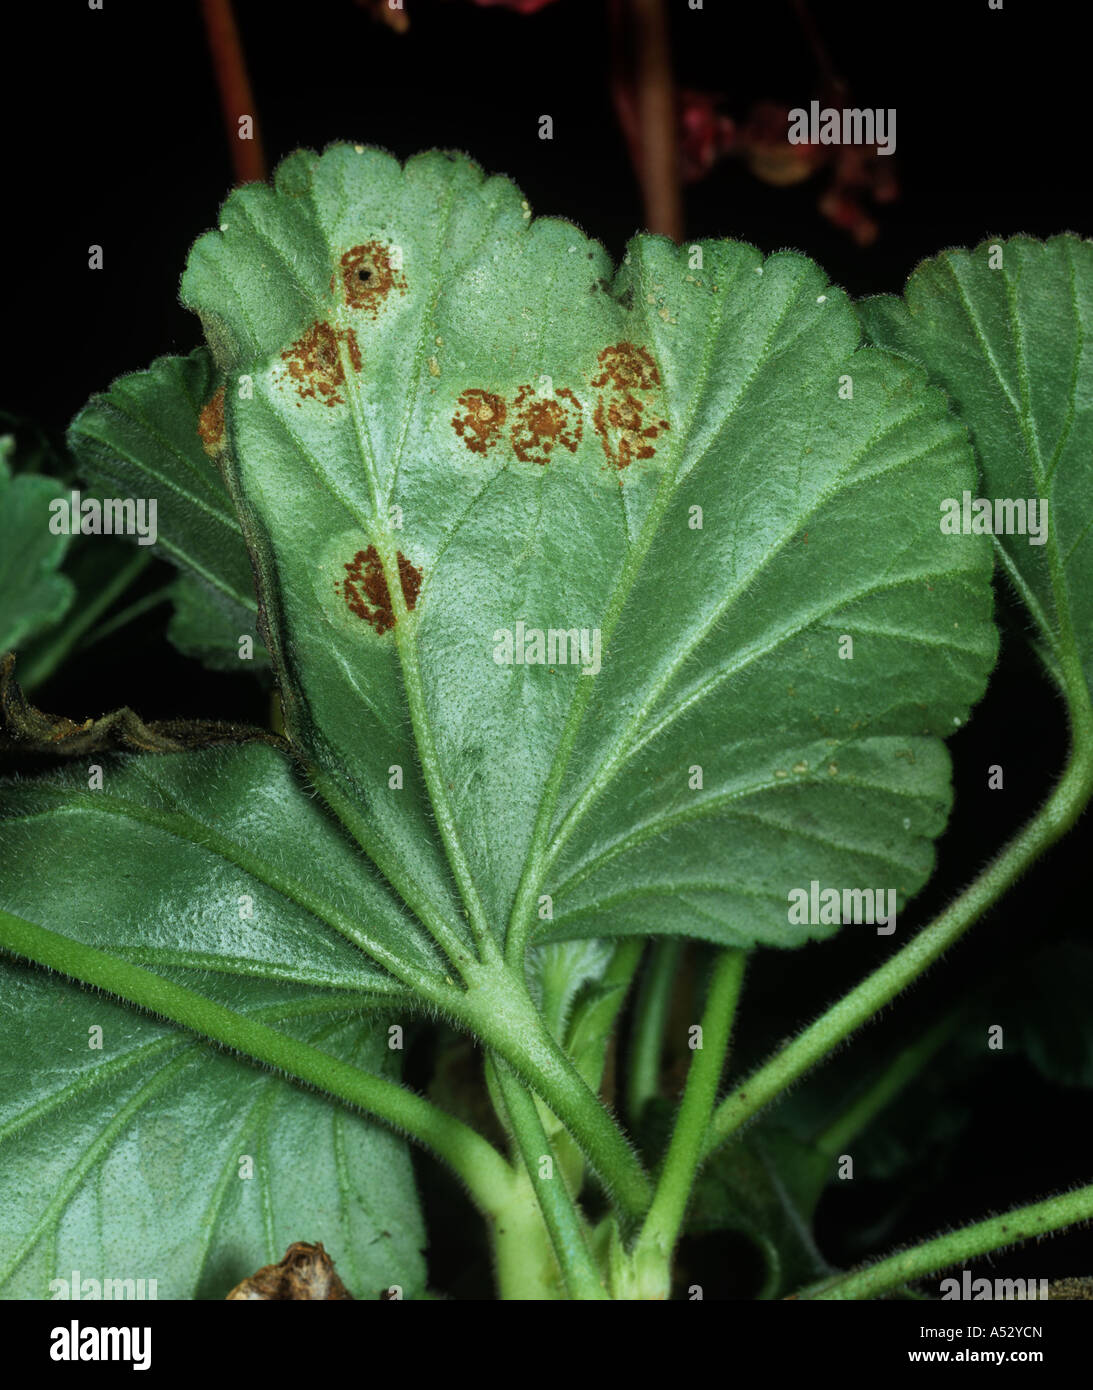 Pelargonium rust Puccinia pelargonii zonalis pustules on pelargonium leaf underside Stock Photo